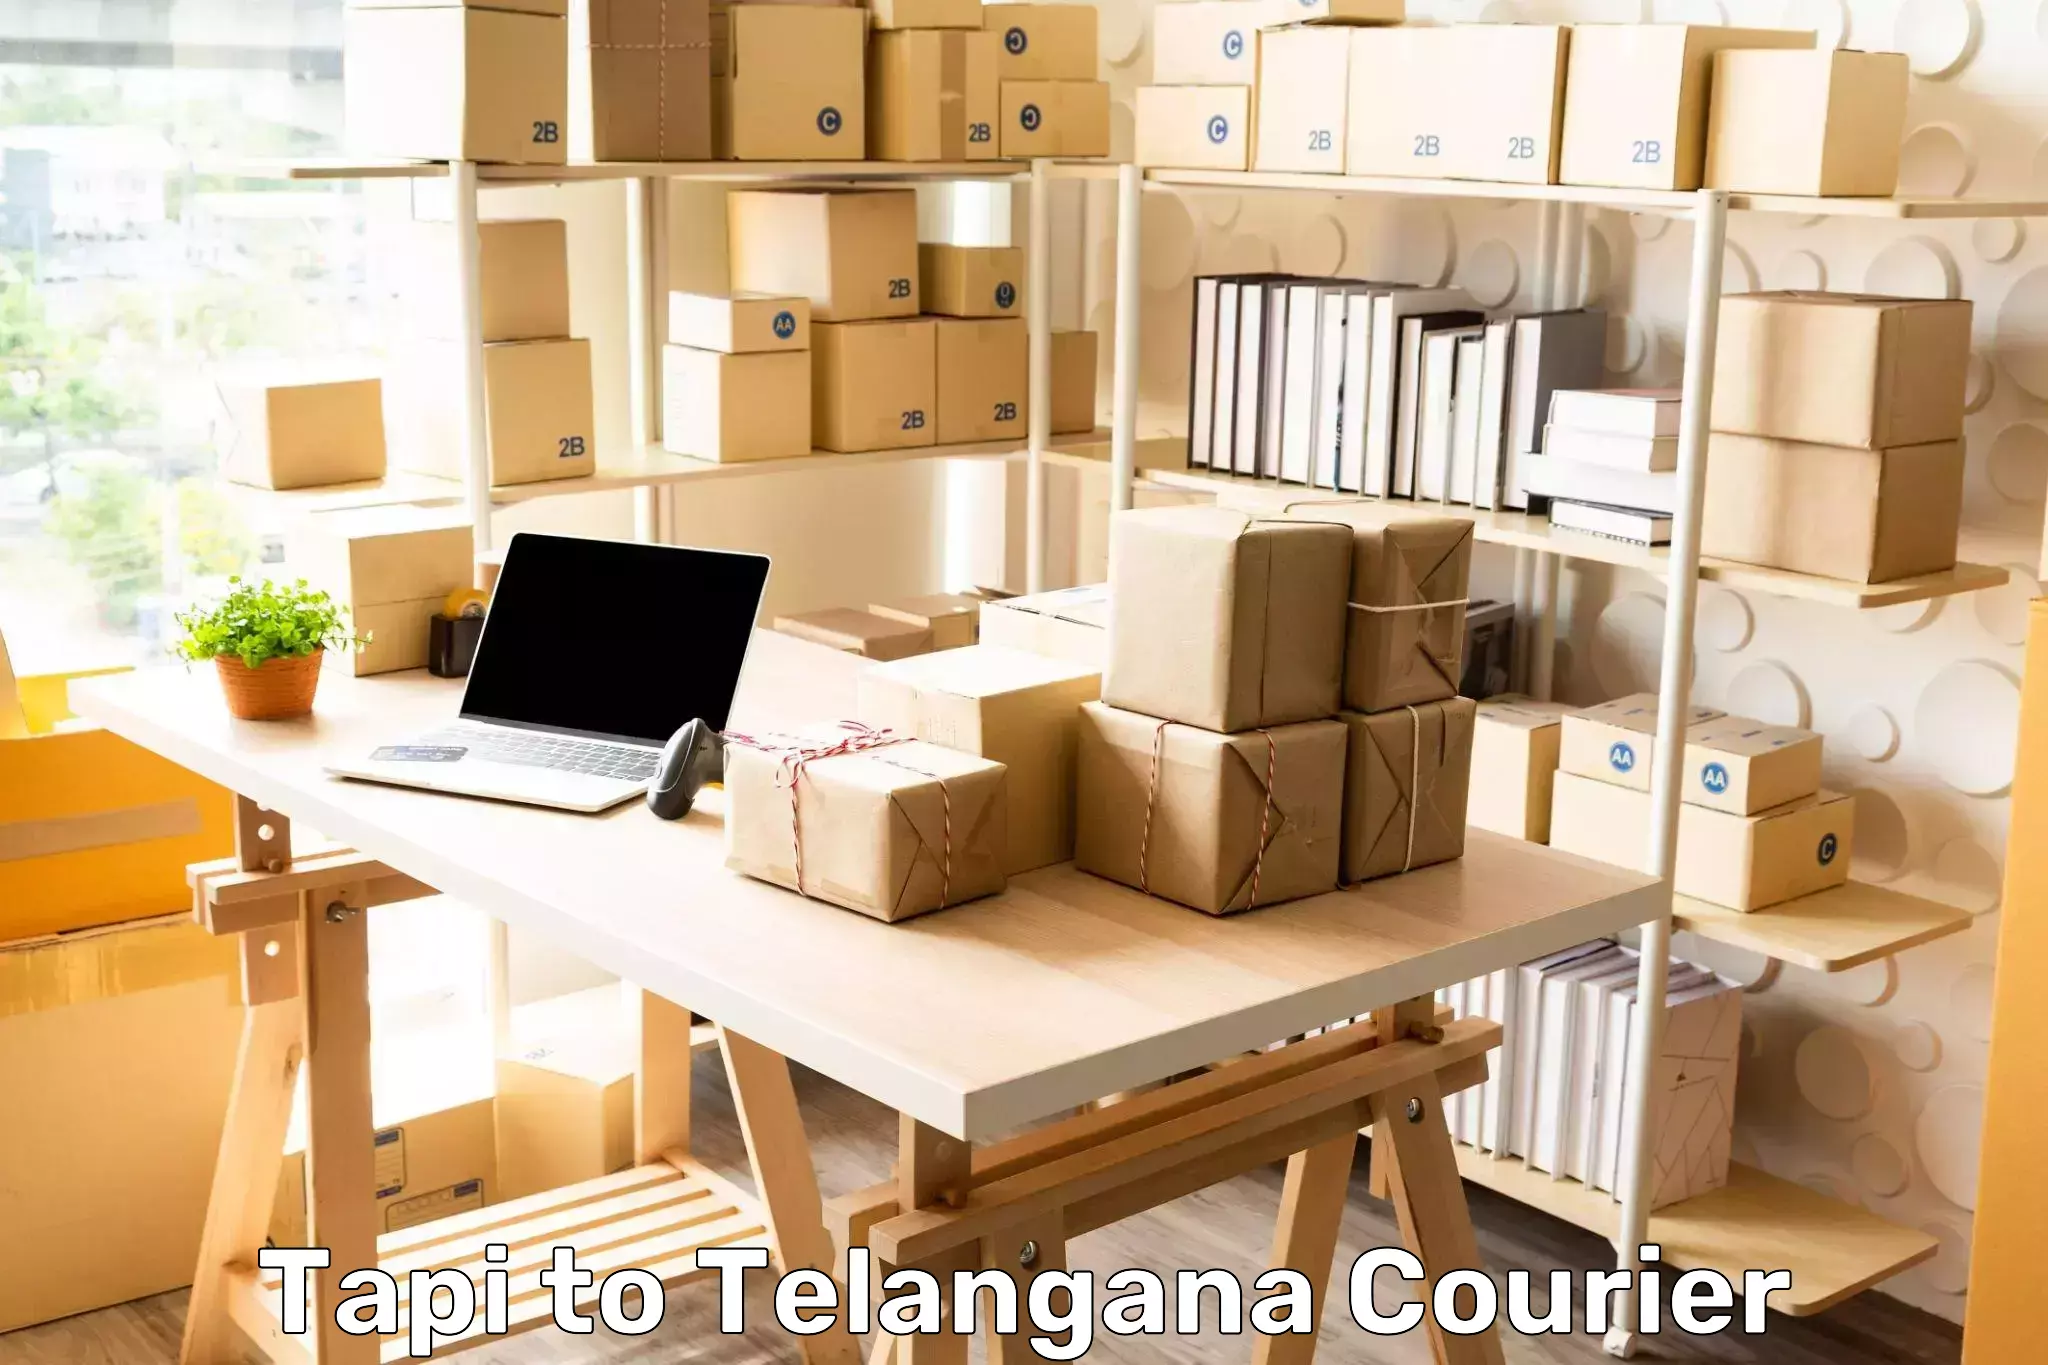 Supply chain delivery Tapi to Devarakonda